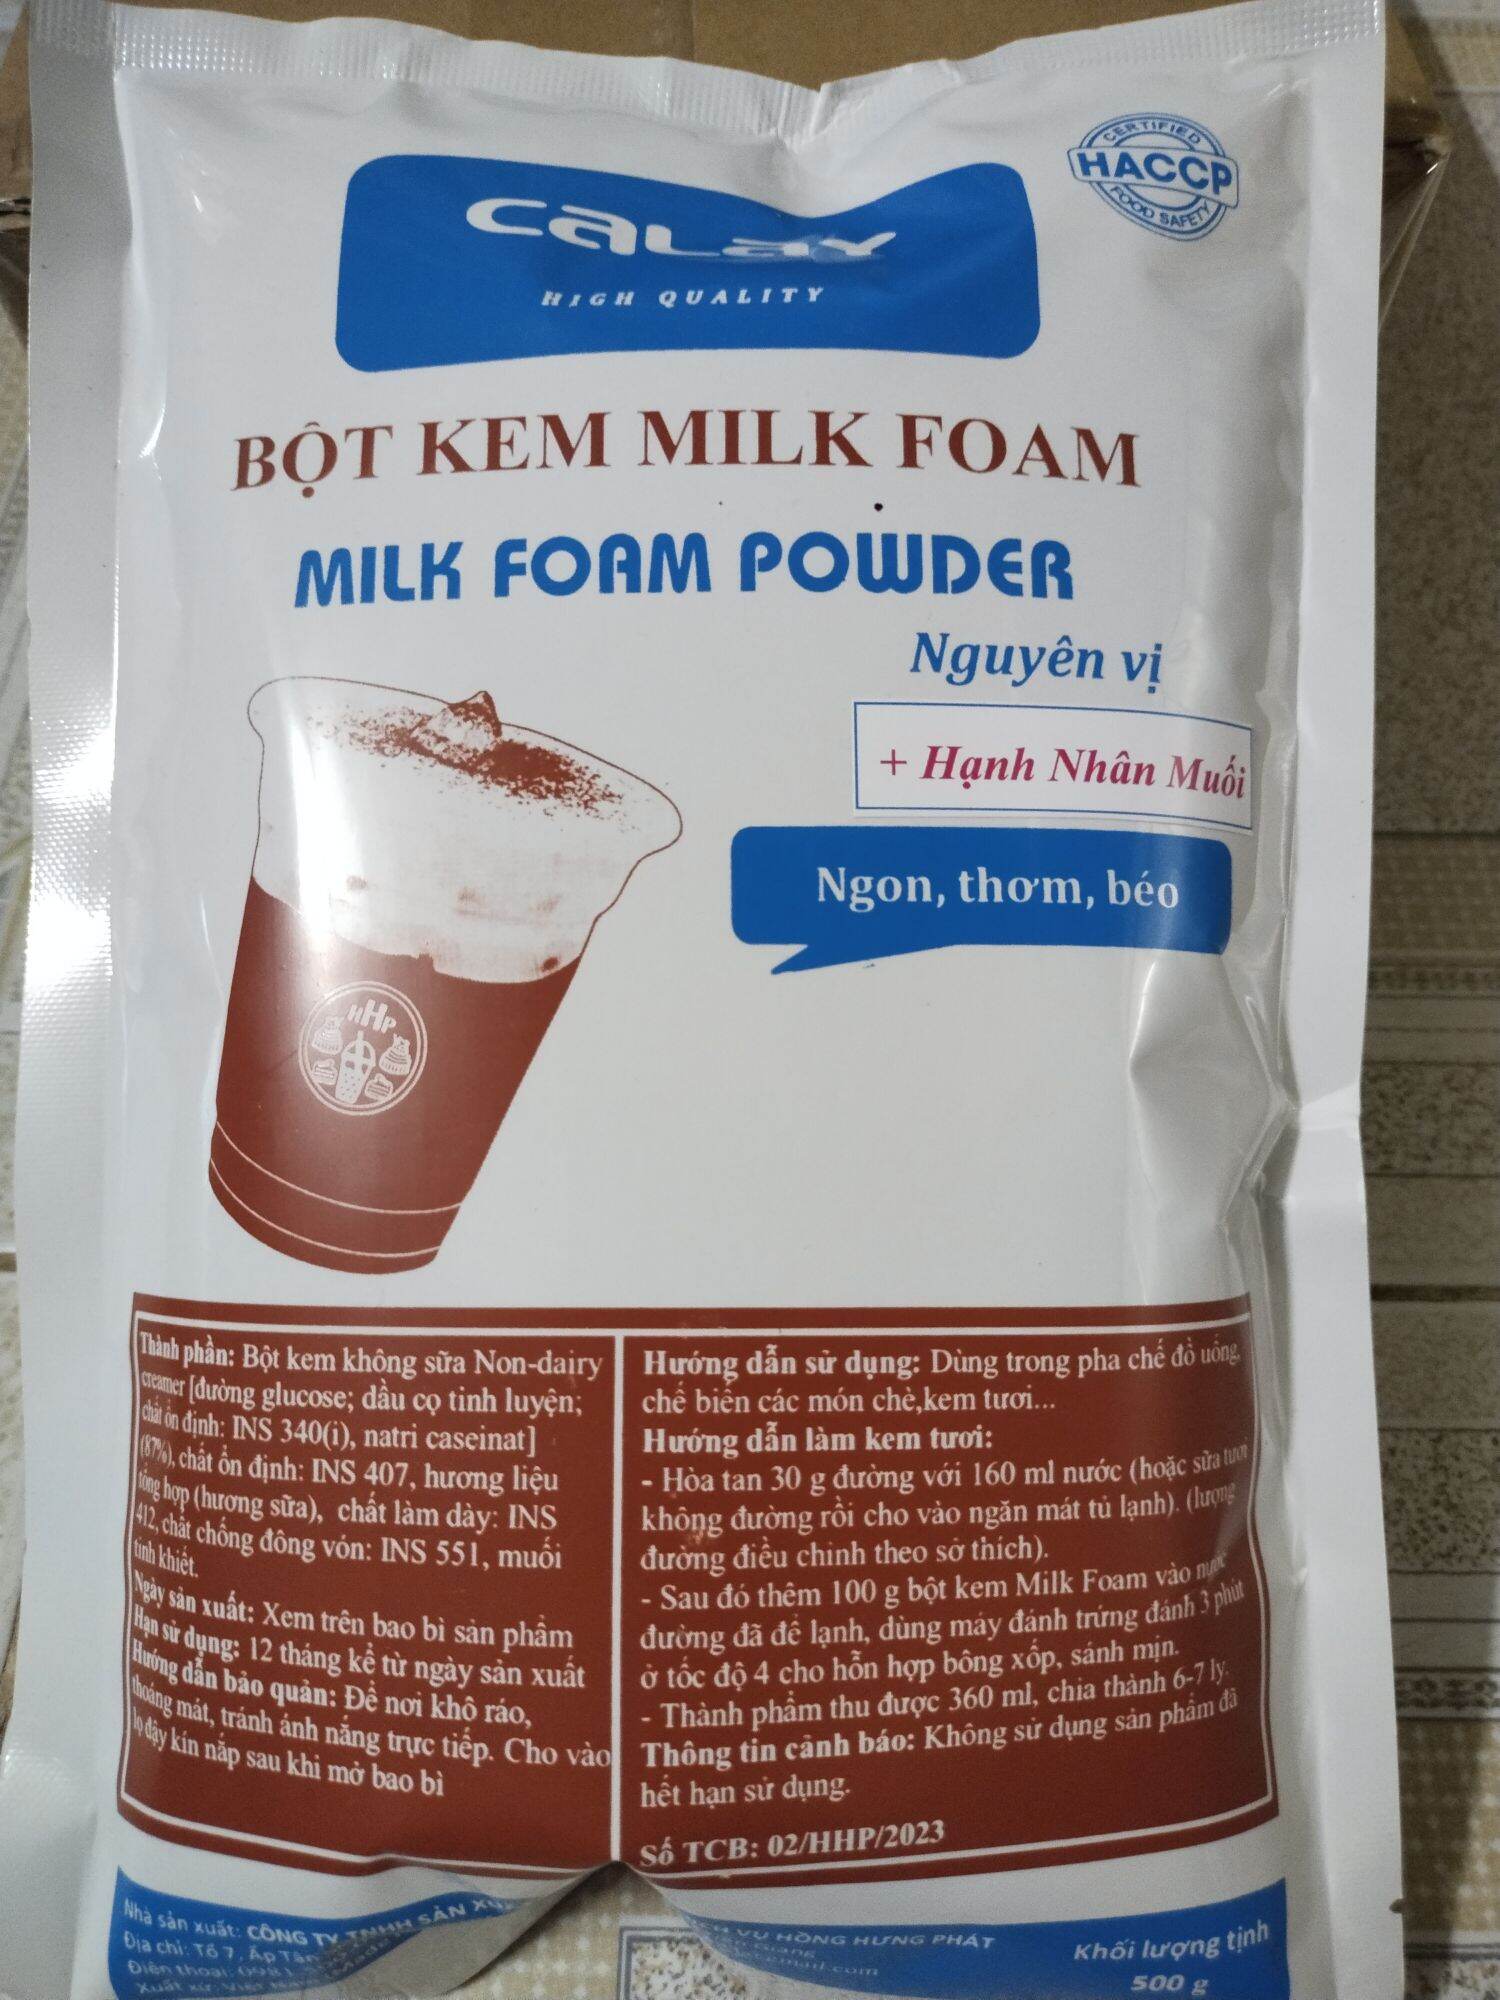 Bột Kem Milk Foam hạnh nhân muối 500g Váng sữa hạnh nhân muối